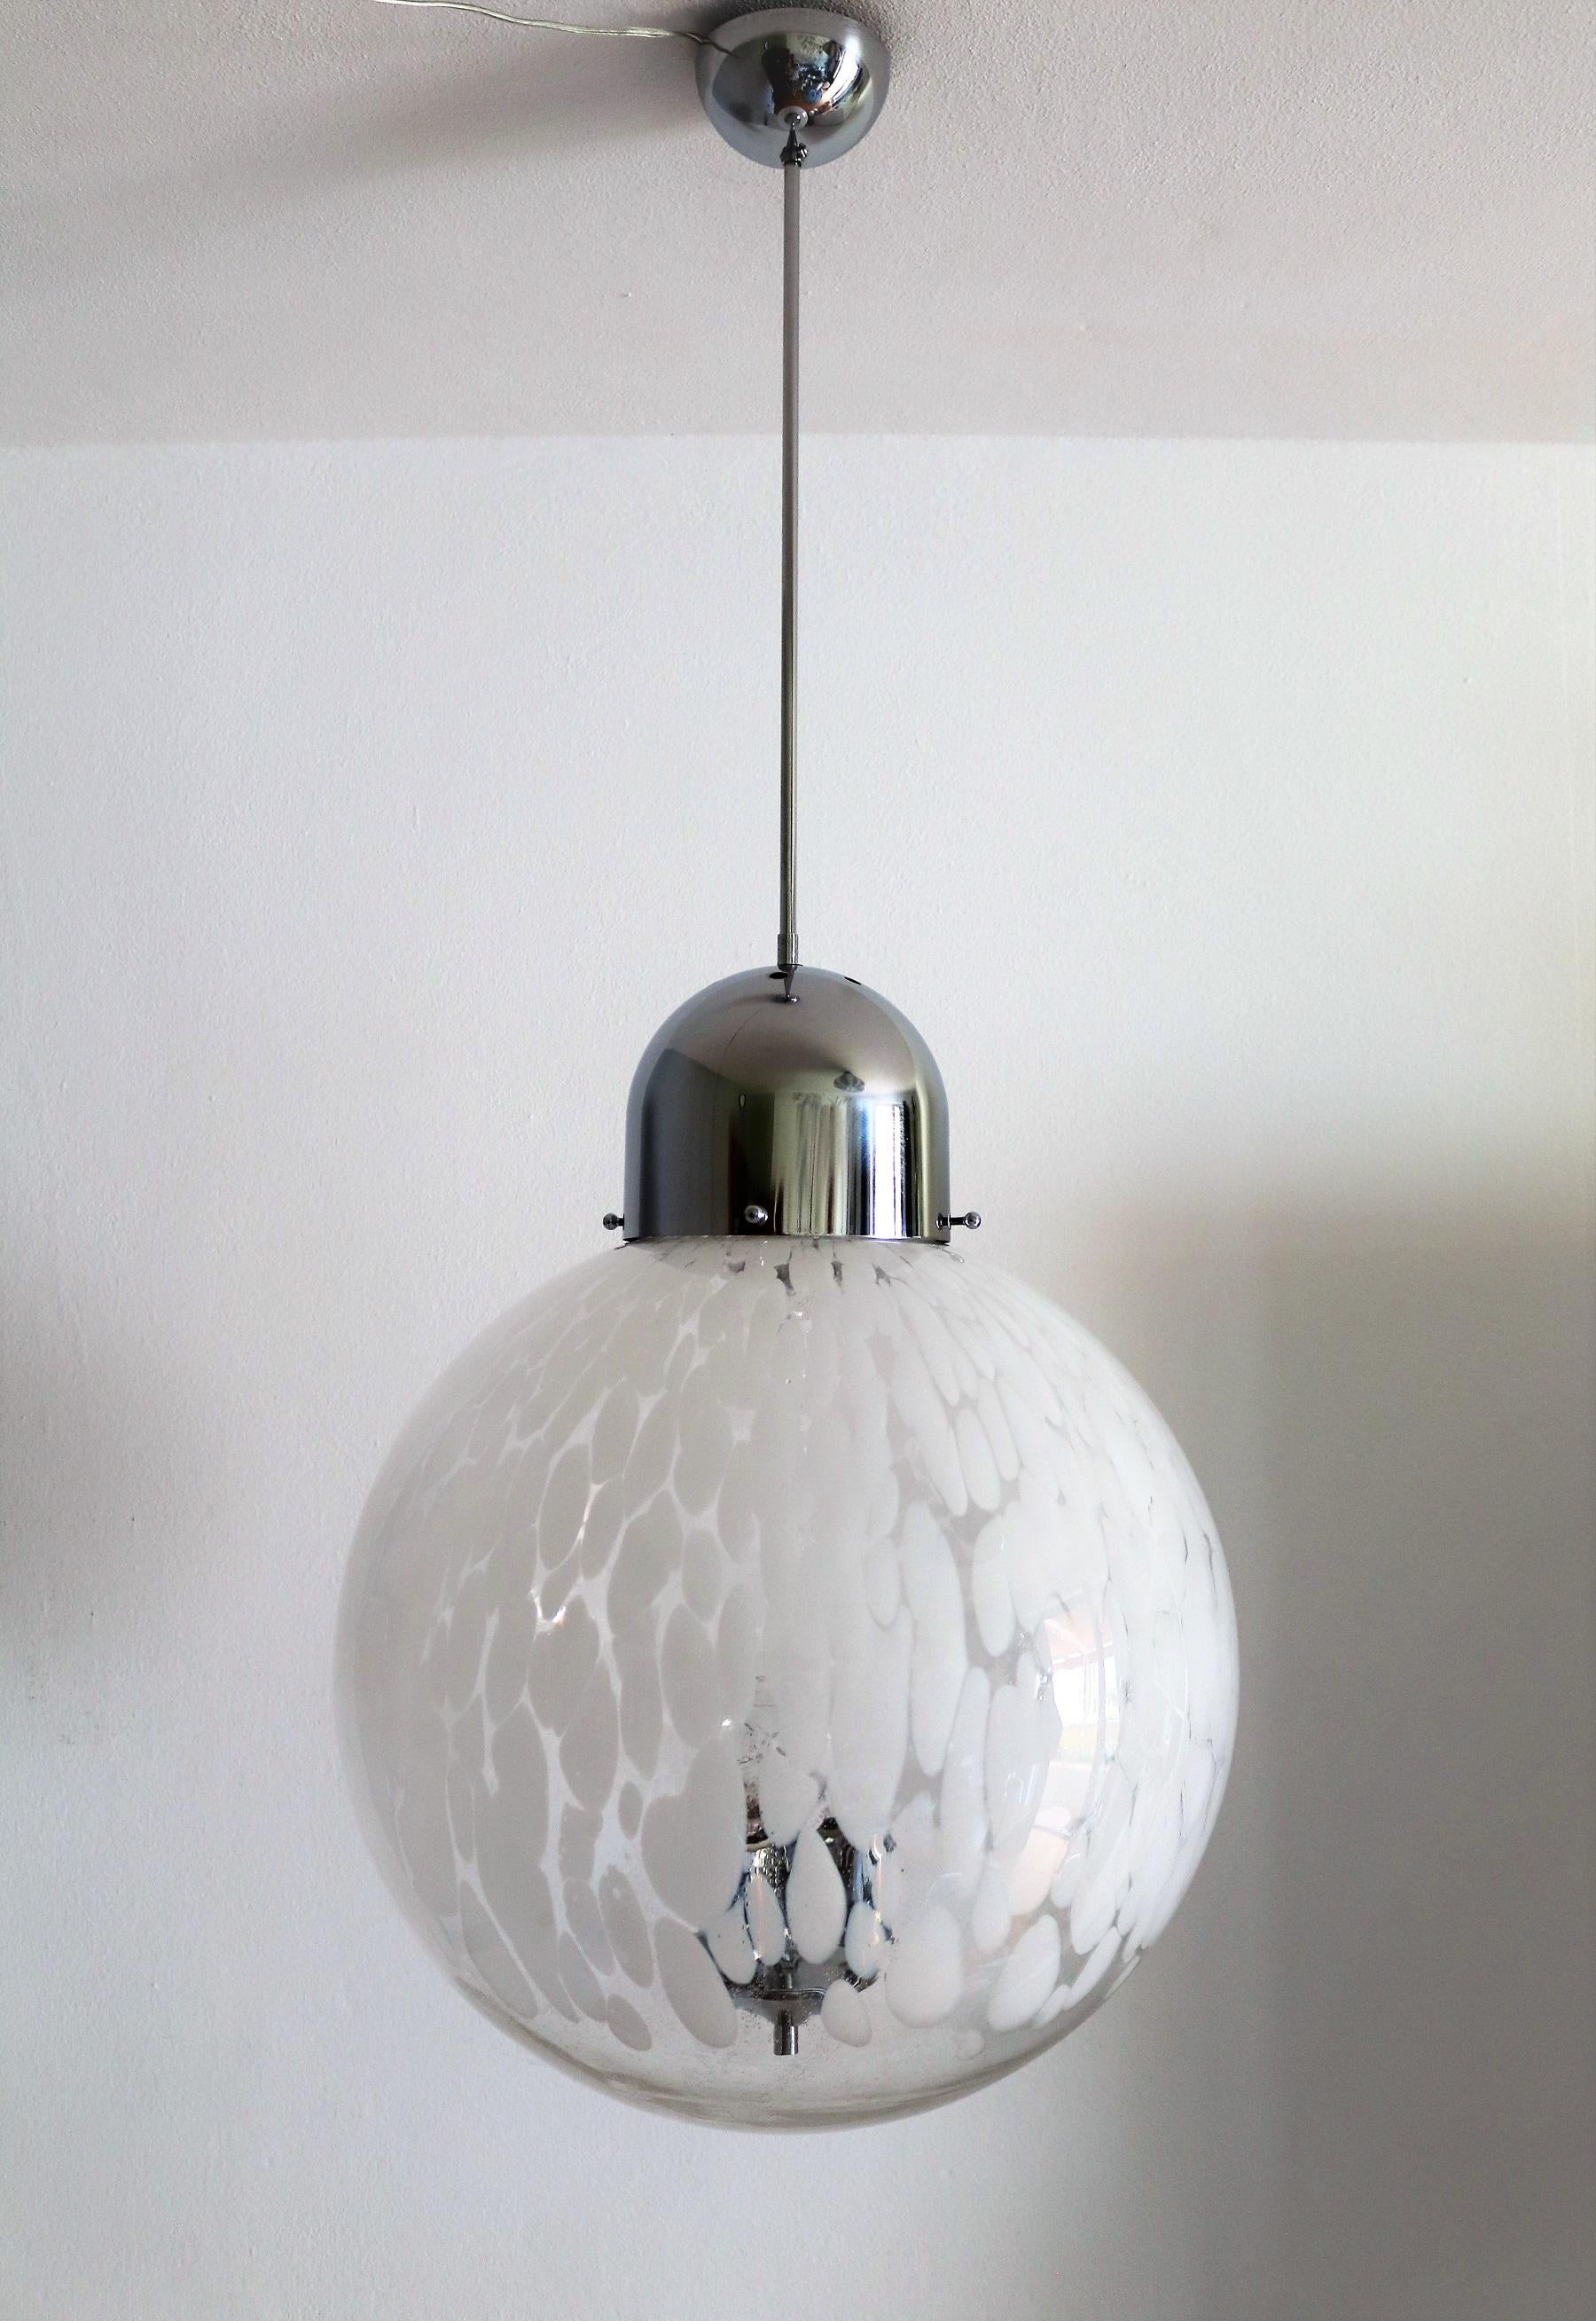 Superbe lampe à suspension avec un grand globe en verre de Murano tacheté et une base de lampe chromée.
Le verre a un très grand diamètre et est en très bon état. Les chromes ont été polis et sont brillants avec de petits signes d'âge et de